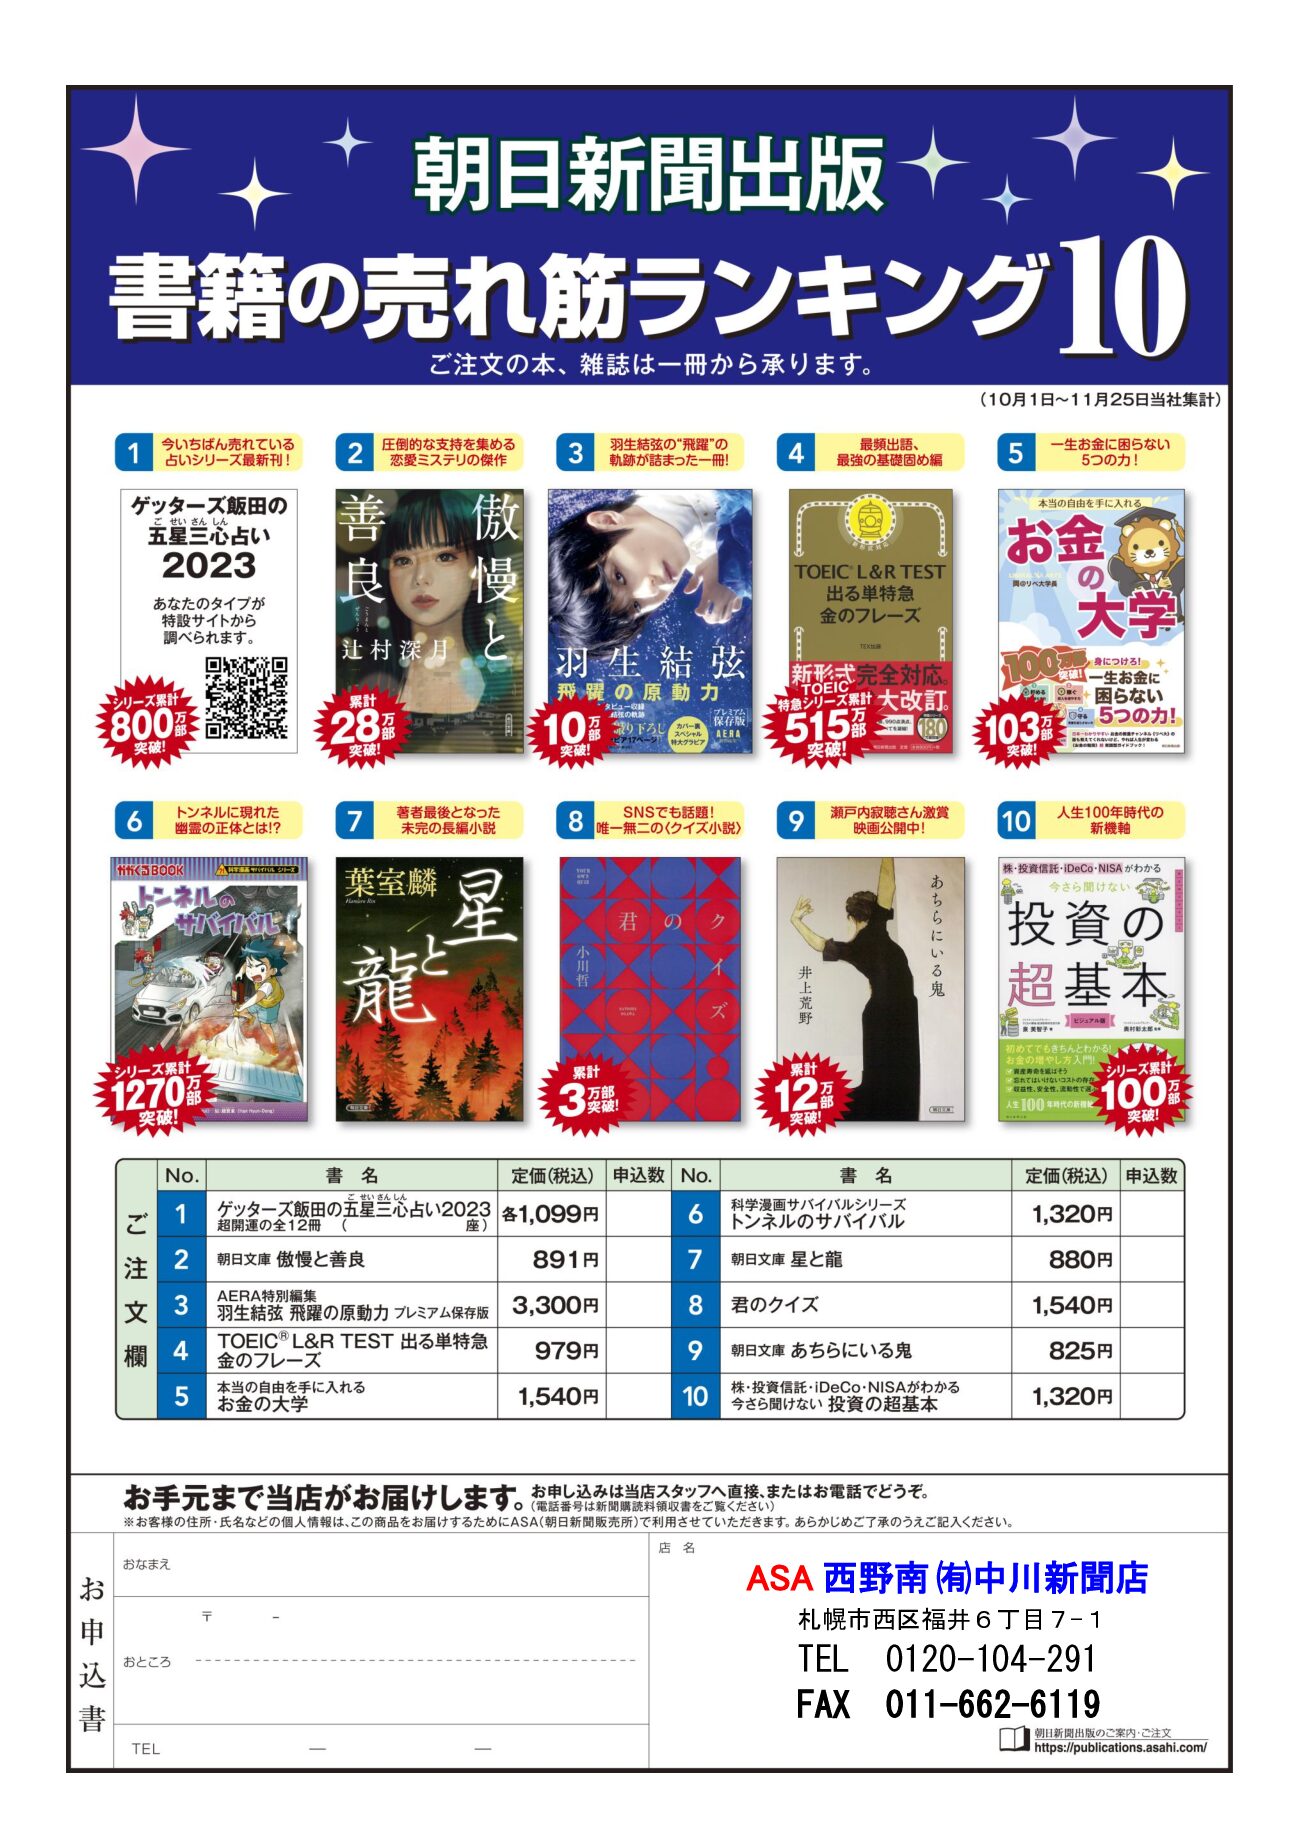 朝日新聞出版 書箱の売れ筋ランキング10 12月image